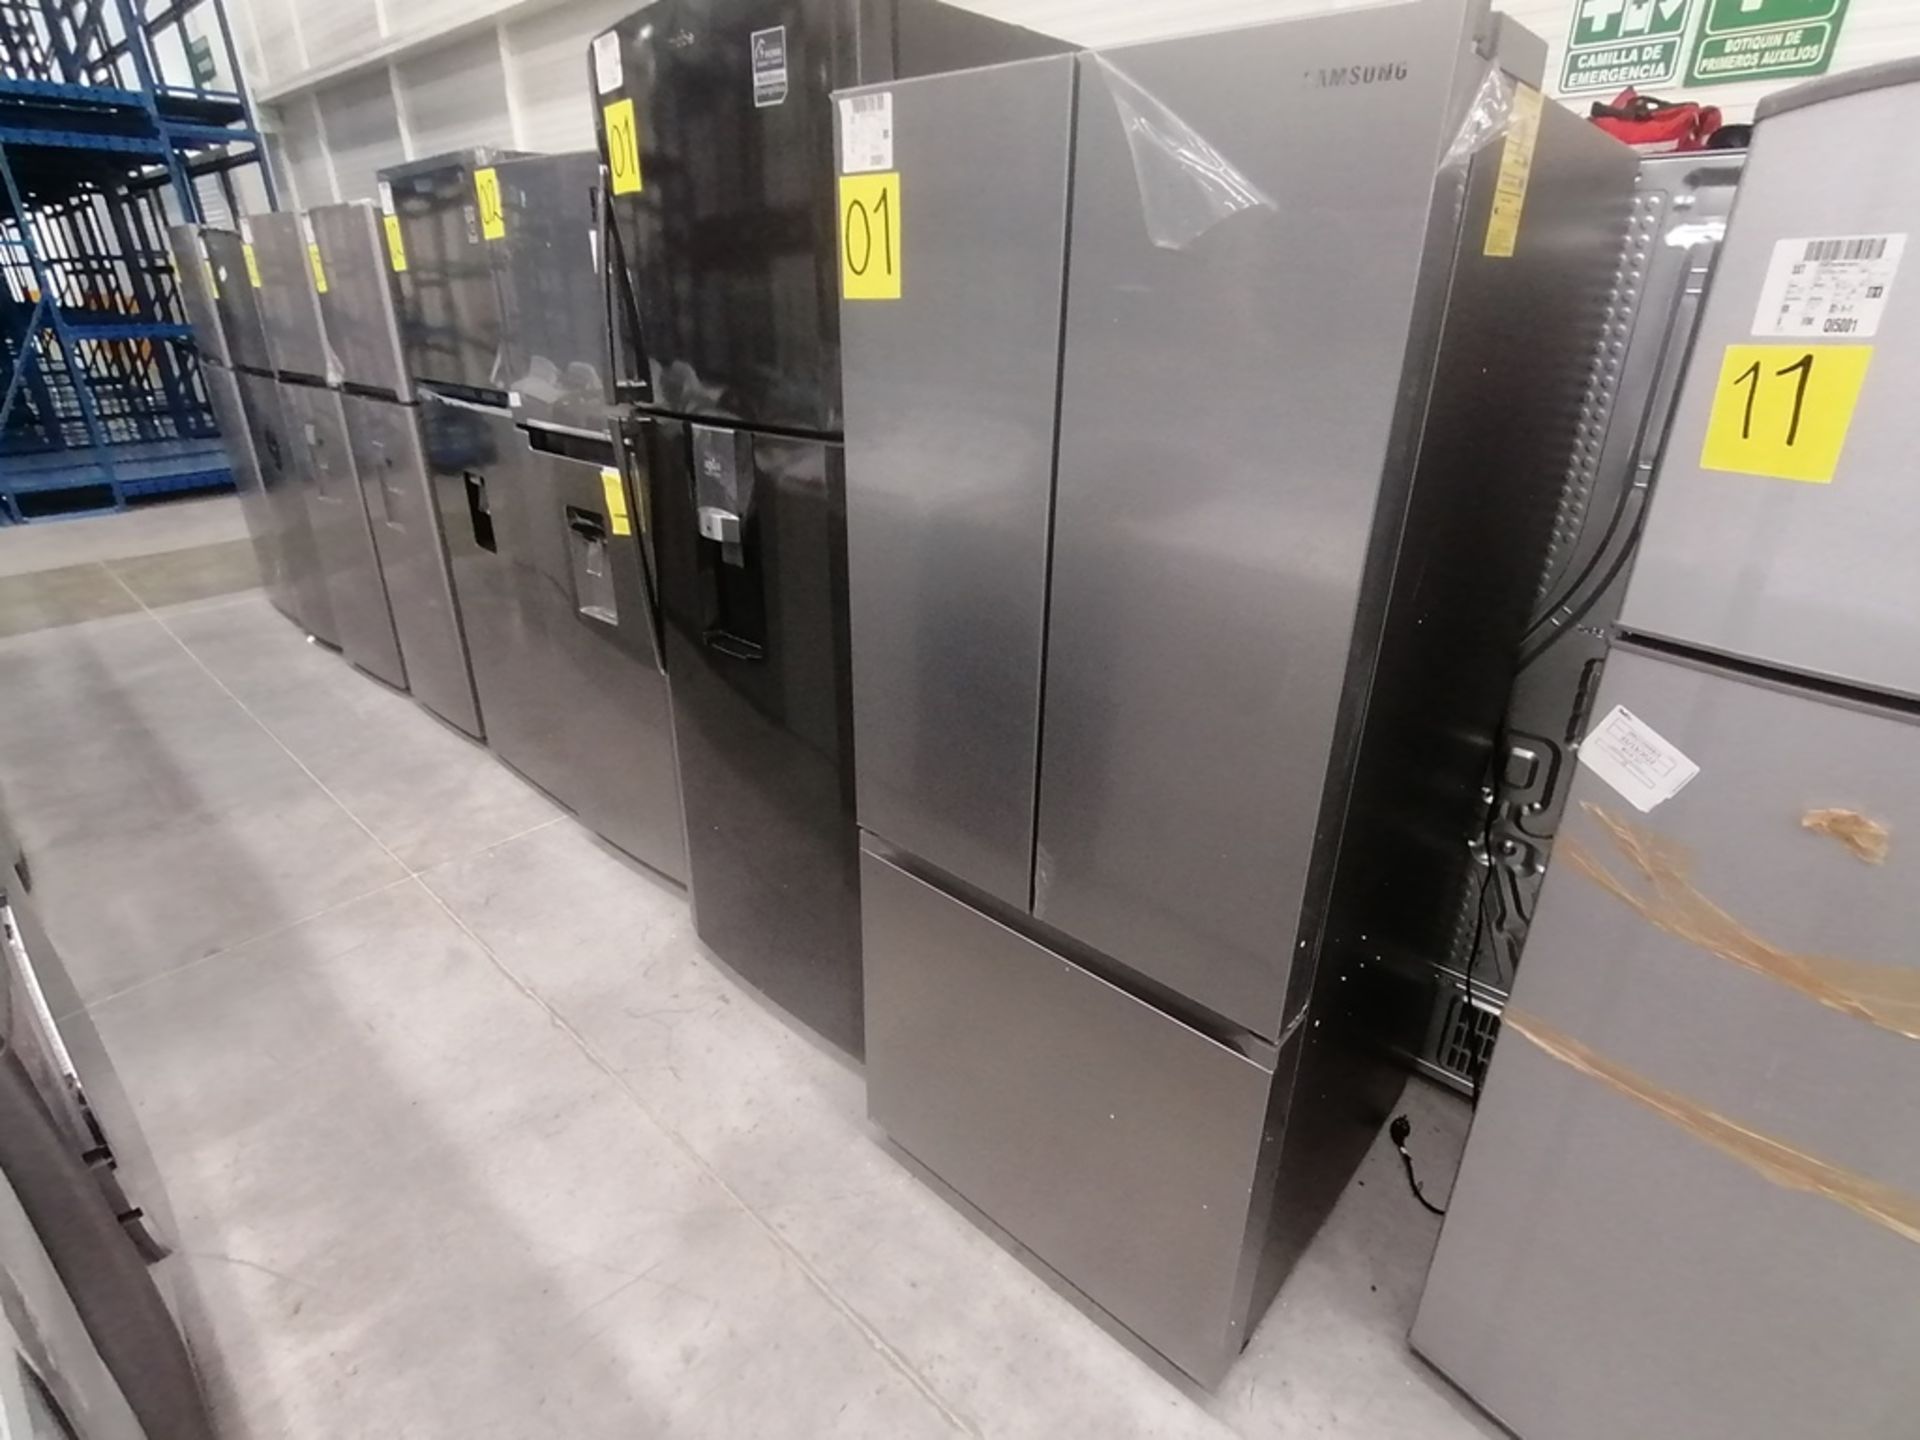 Lote de 2 refrigeradores incluye: 1 Refrigerador, Marca Samsung, Modelo RT22A401059, Serie 8BA84BBR - Image 2 of 15